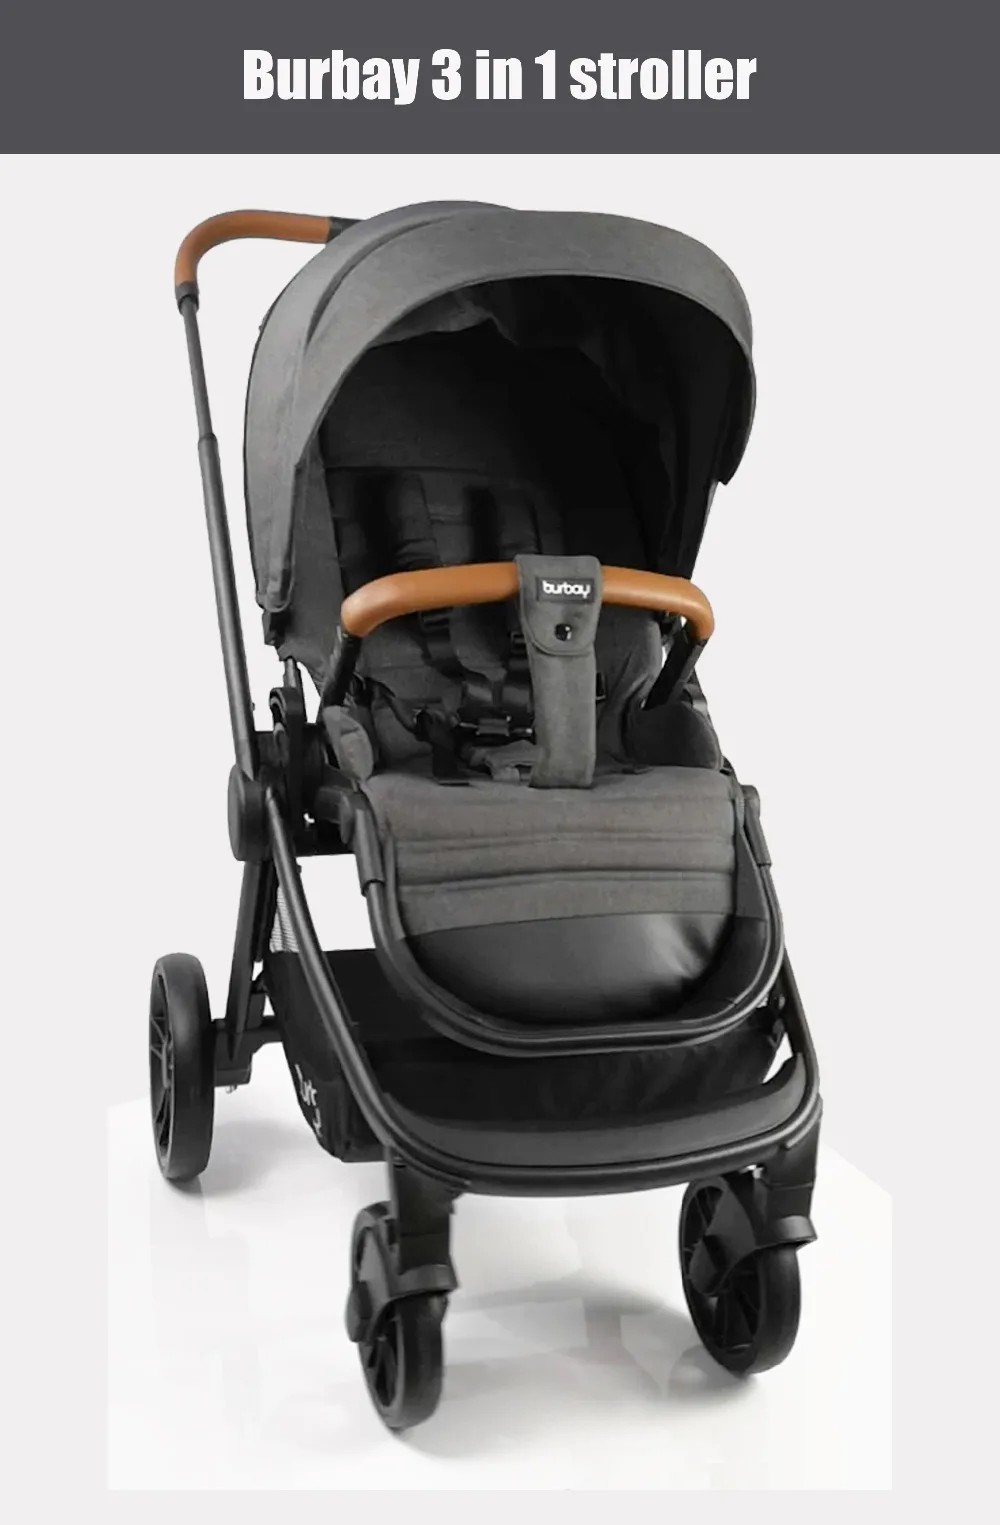 Многофункциональная 3 в 1 детская коляска с высоким пейзажем, складная коляска, Золотая детская коляска, коляска для новорожденных